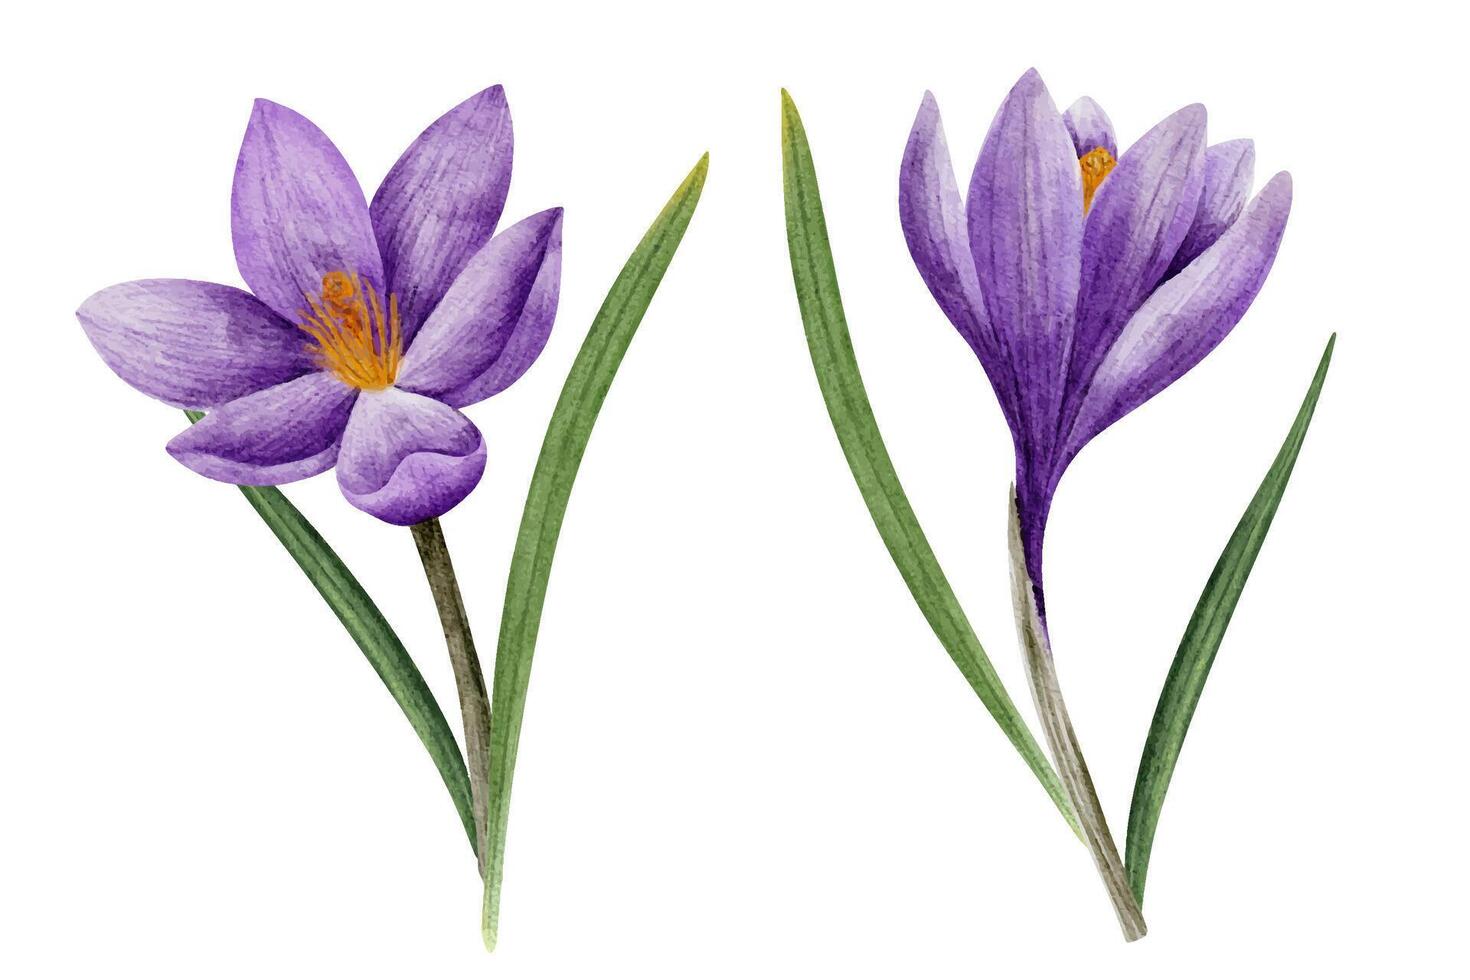 krokus blomma i lila Färg, dragen i vattenfärg, isolerat på vit. hand dragen botanisk illustration. element för kort, logotyper, grafik, bröllop design vektor